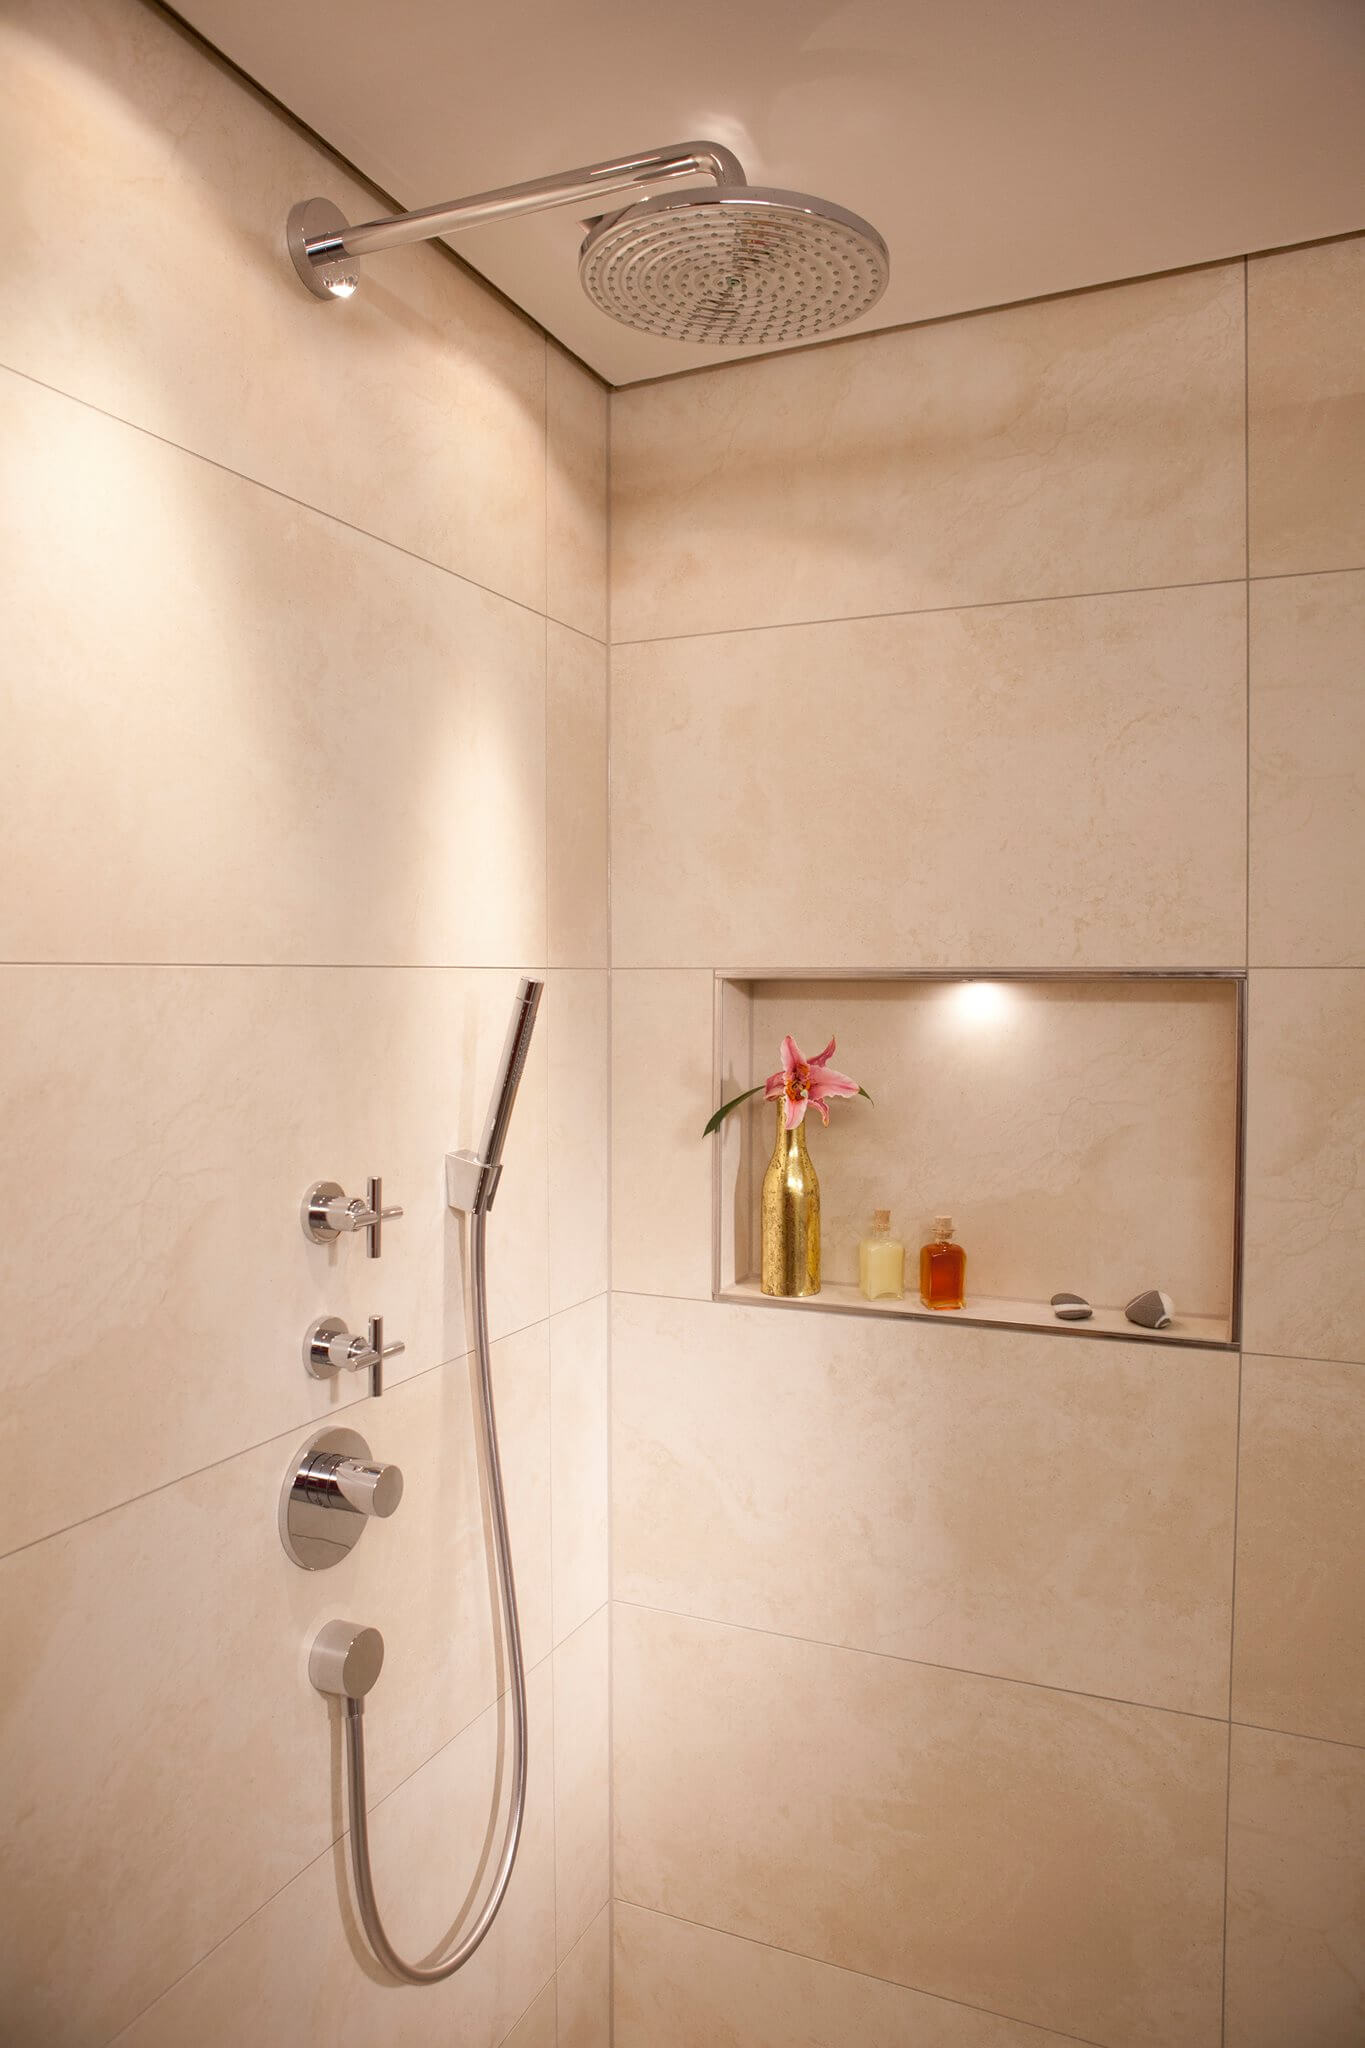 Gäste WC Design mit hellen großen Fliesen in der offenen Dusche mit Vola Armatur und Kopfbrause